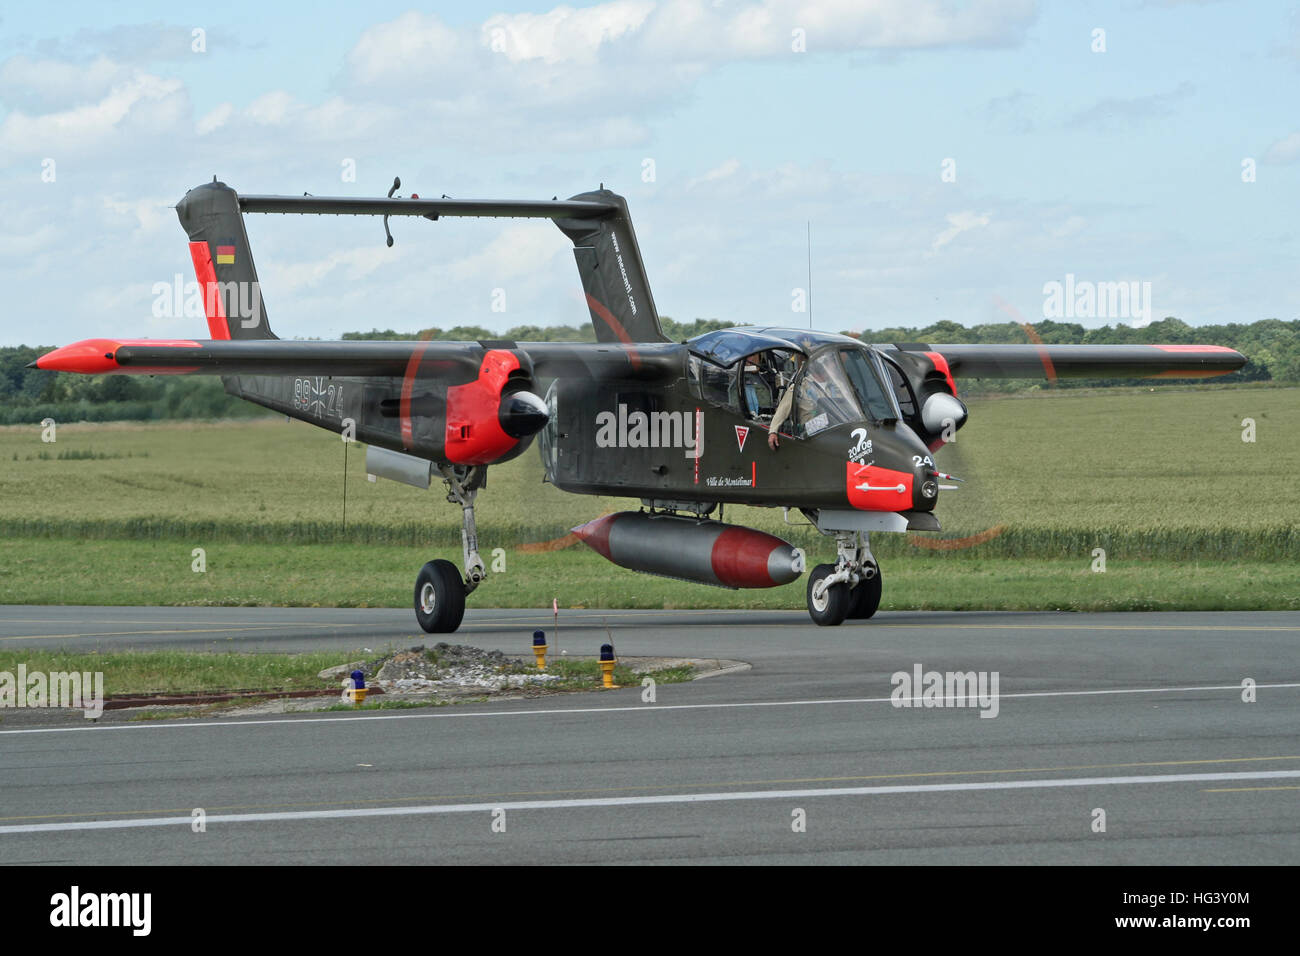 North American rockwell ov-10 bronco avion avec marquages au sol de la force aérienne allemande Banque D'Images